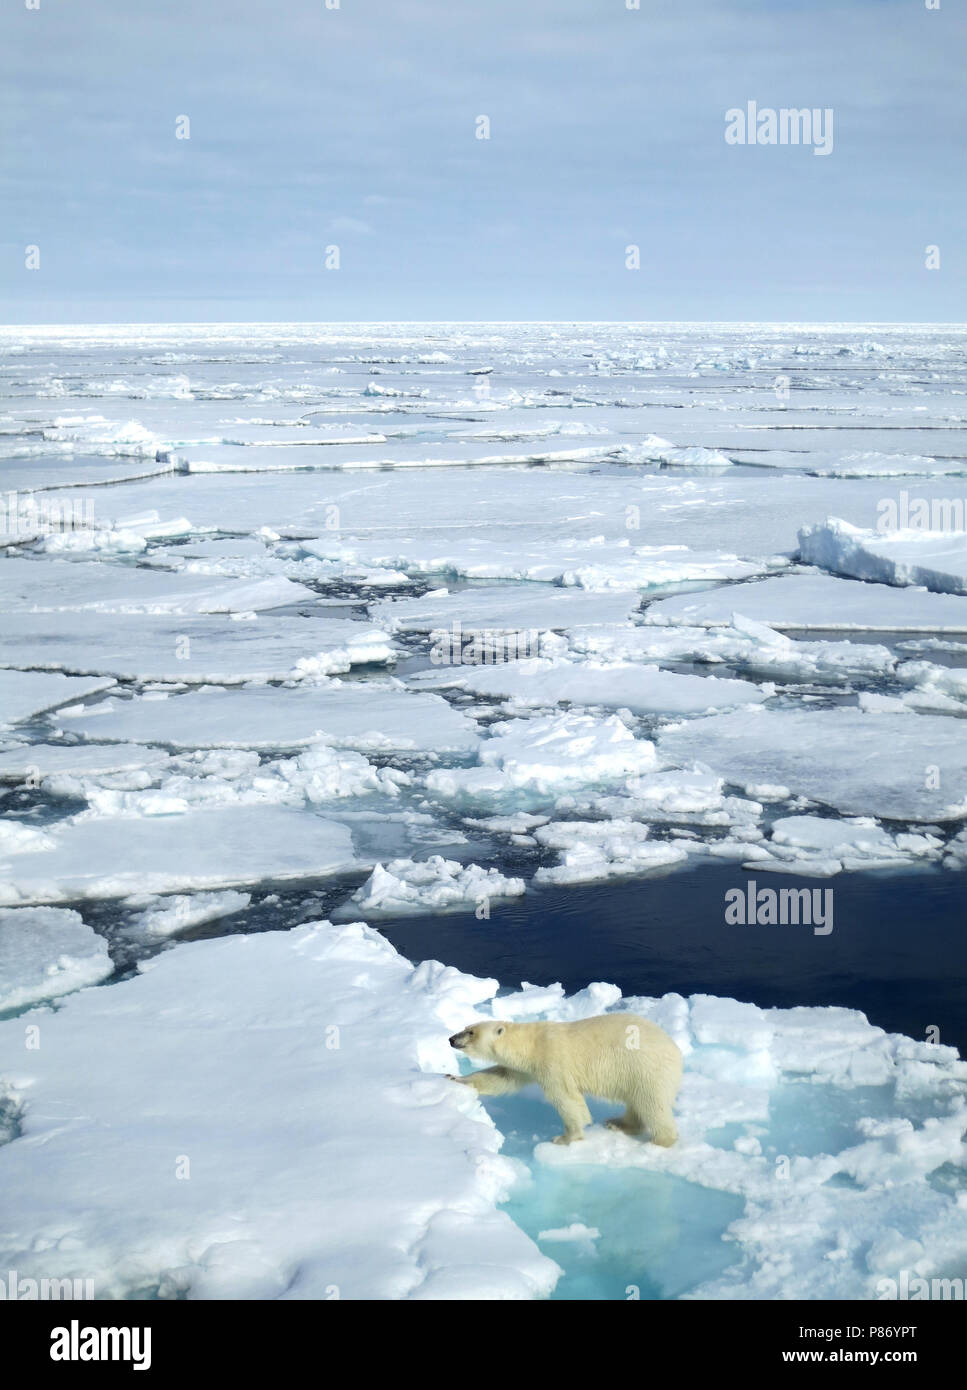 Lopend IJsbeer op het pakijs ; la marche de l'ours polaire sur la banquise Banque D'Images